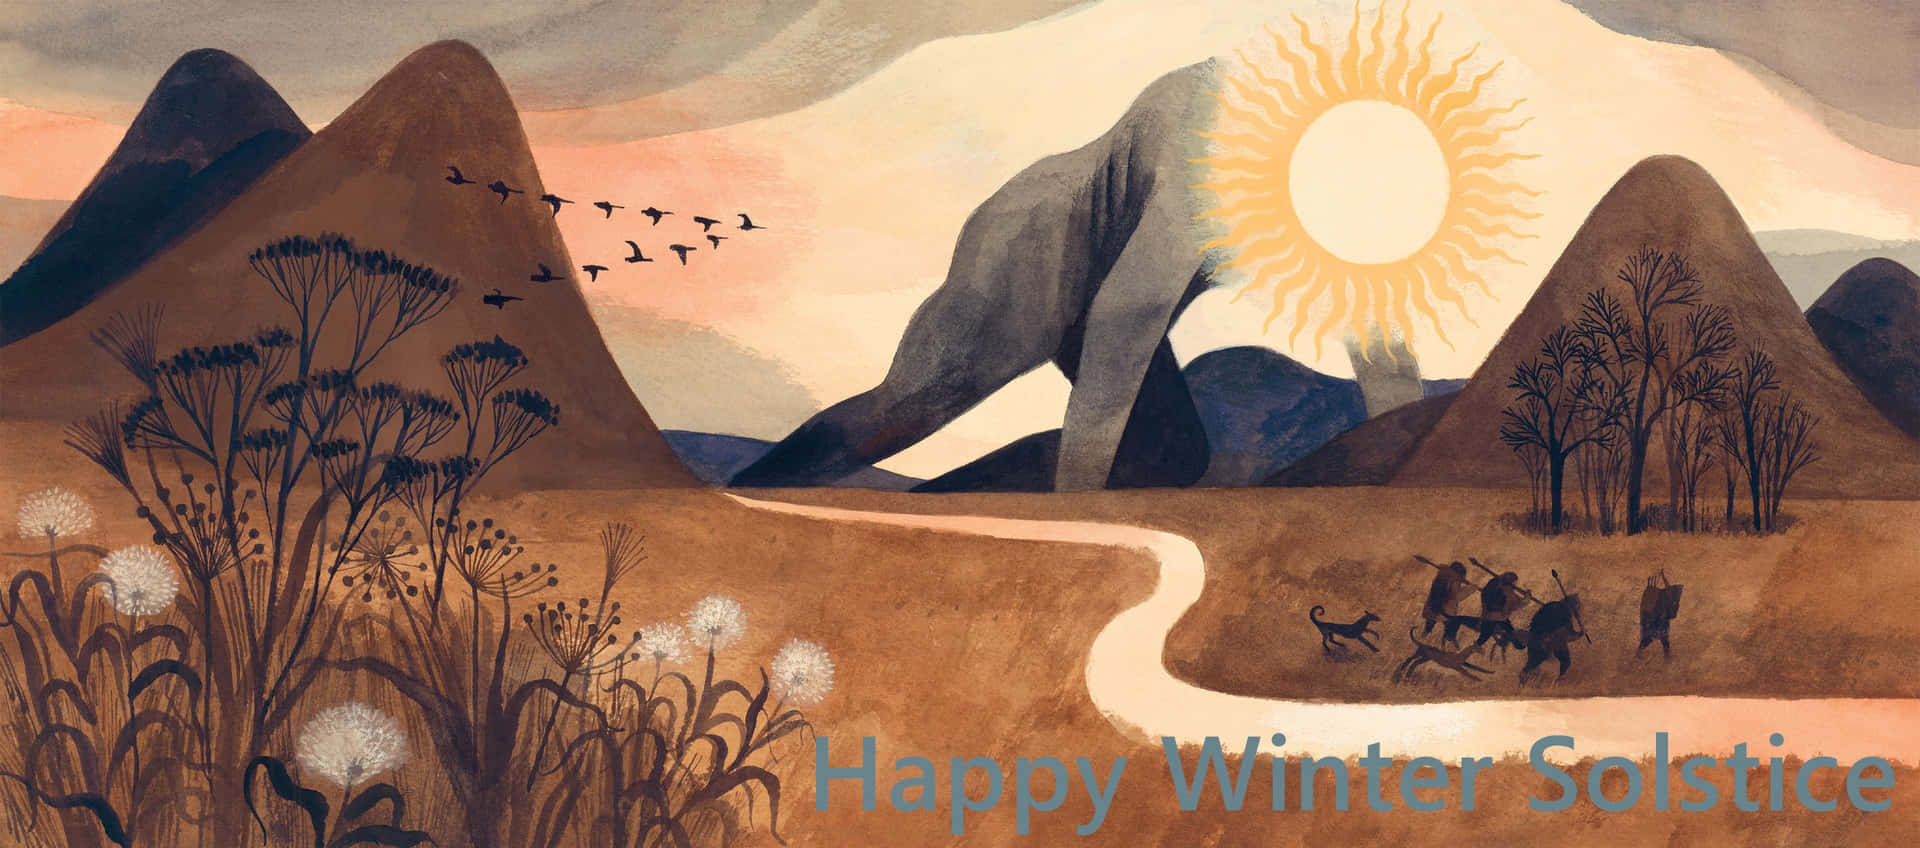 Happy Winter Solstice Wallpaper